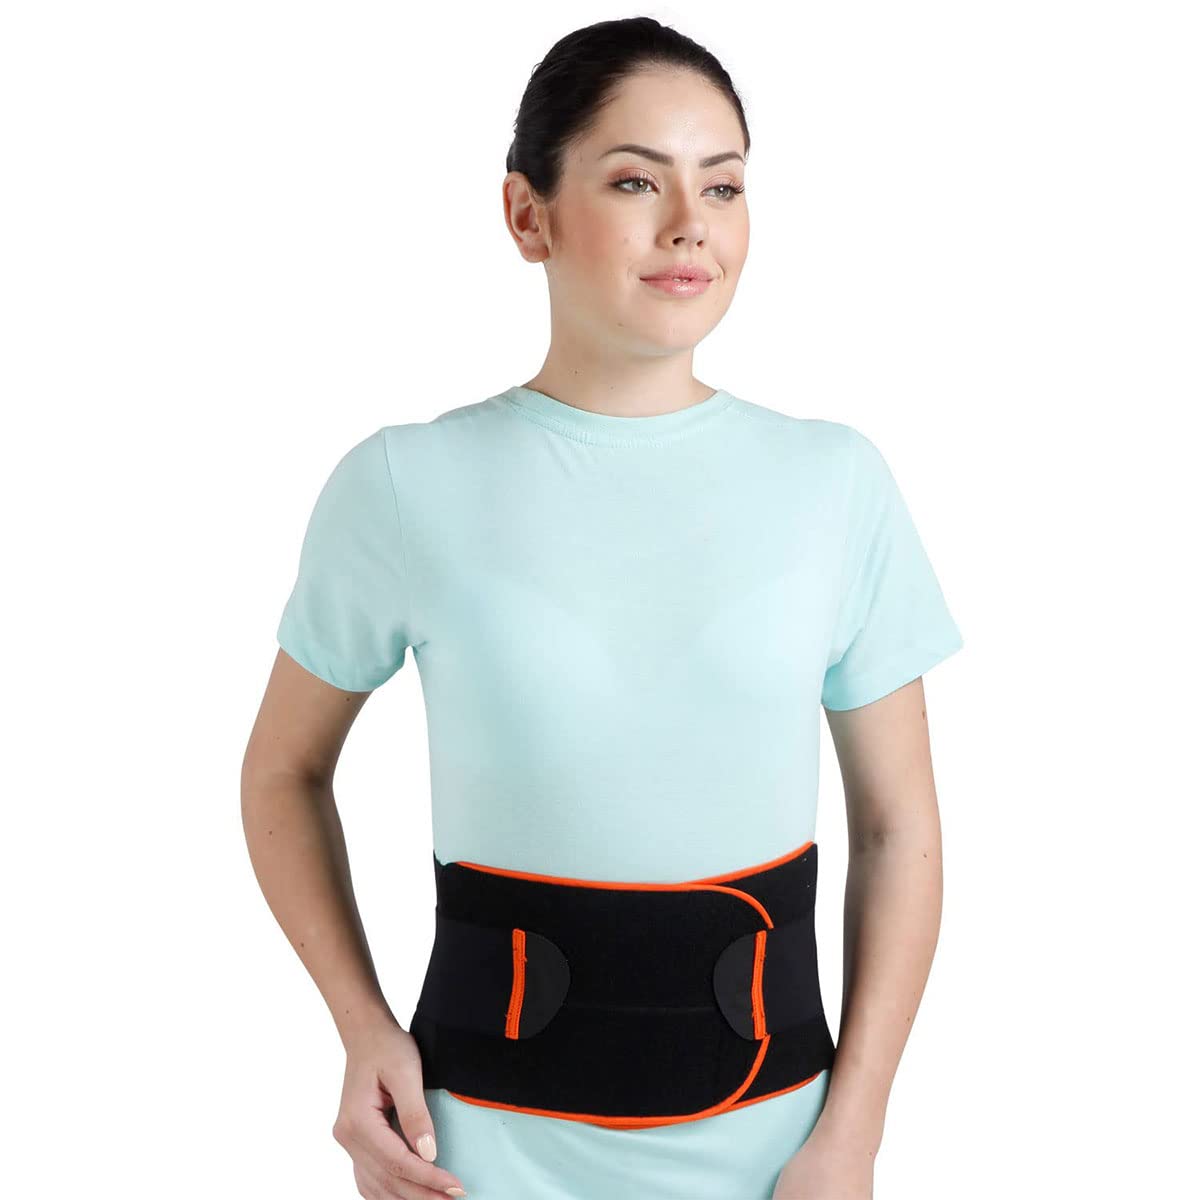 lumbar Support Waist belt for Back Pain Relief